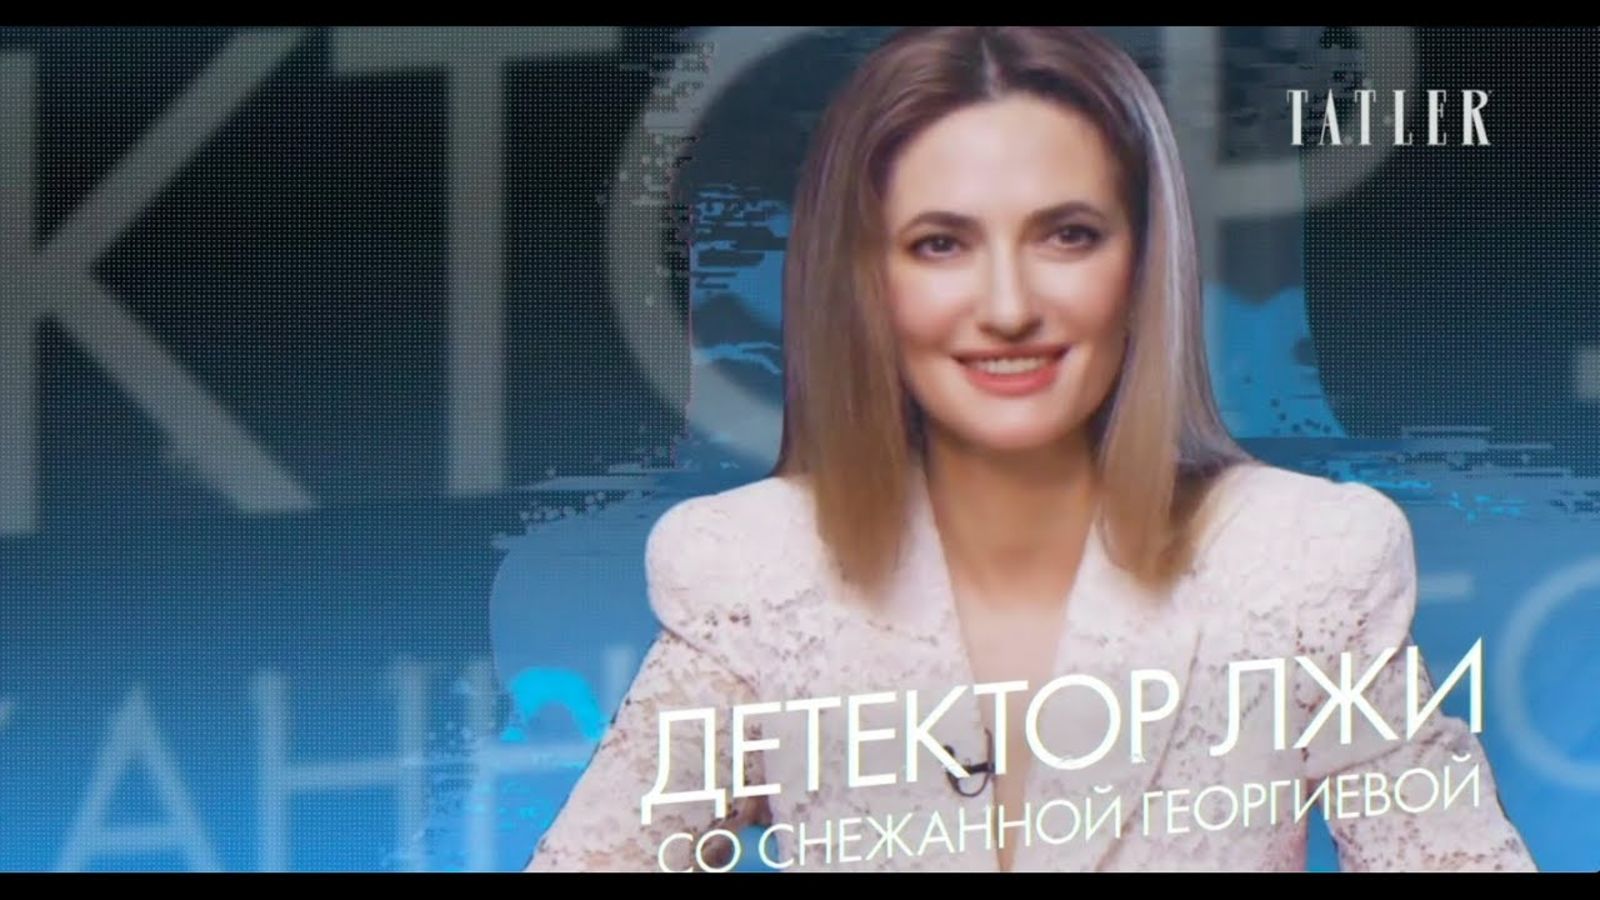 Снежанна Георгиева проходит детектор лжи: о муже, своем бизнесе и слухах